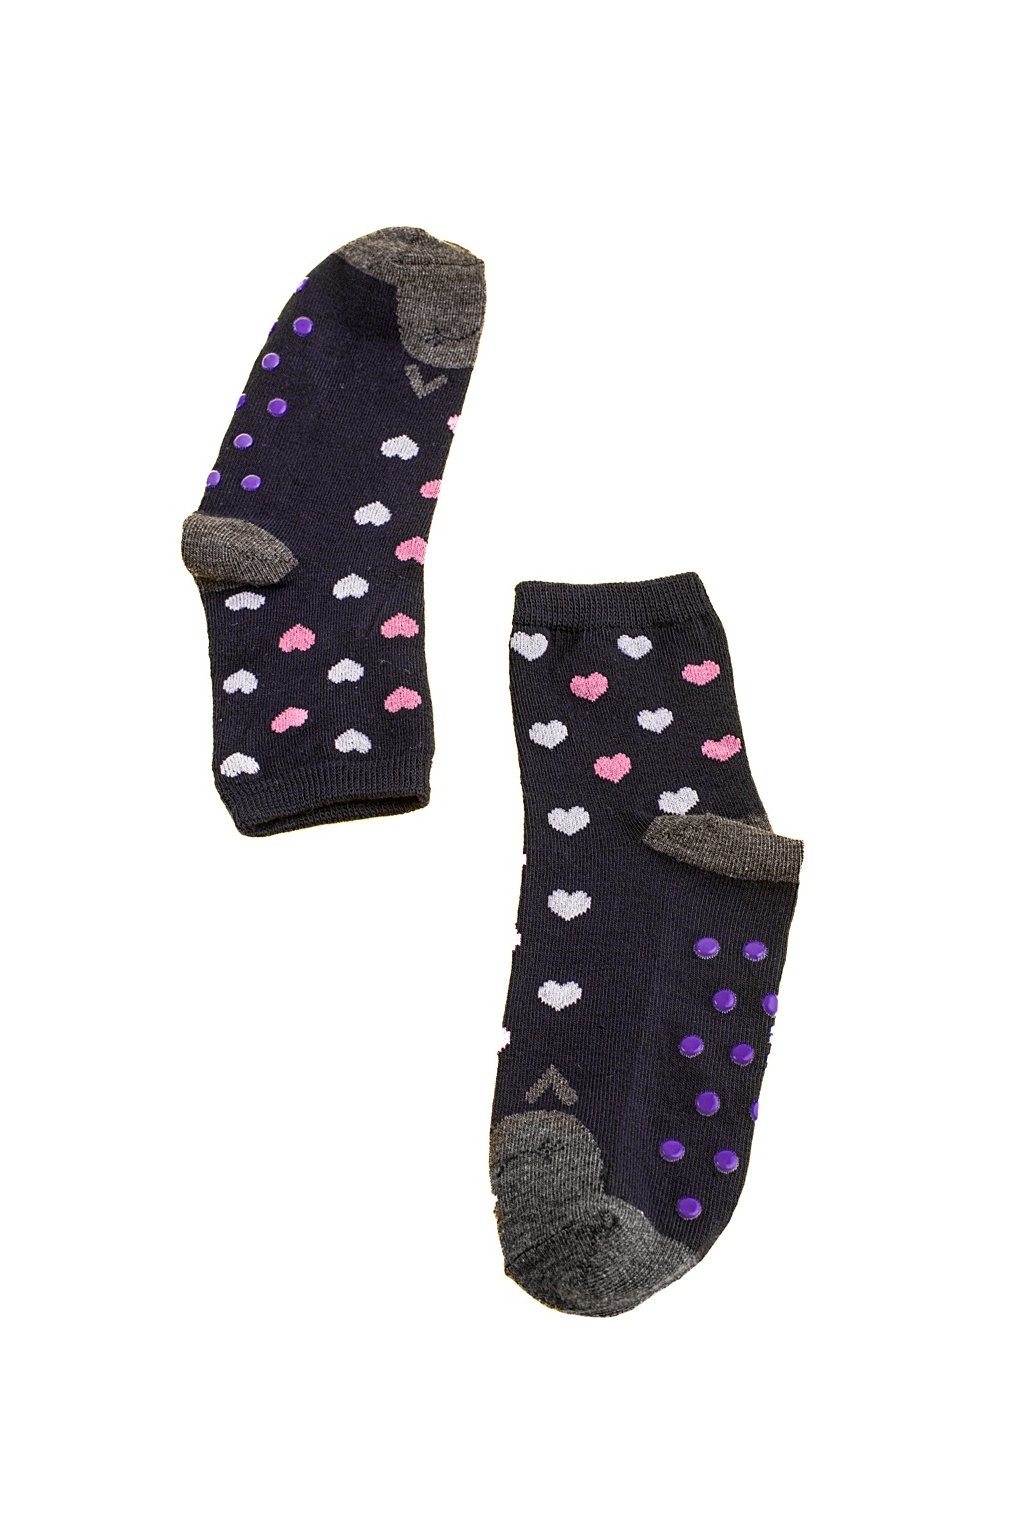 Modré ponožky Shelovet kod A5013-25N/G